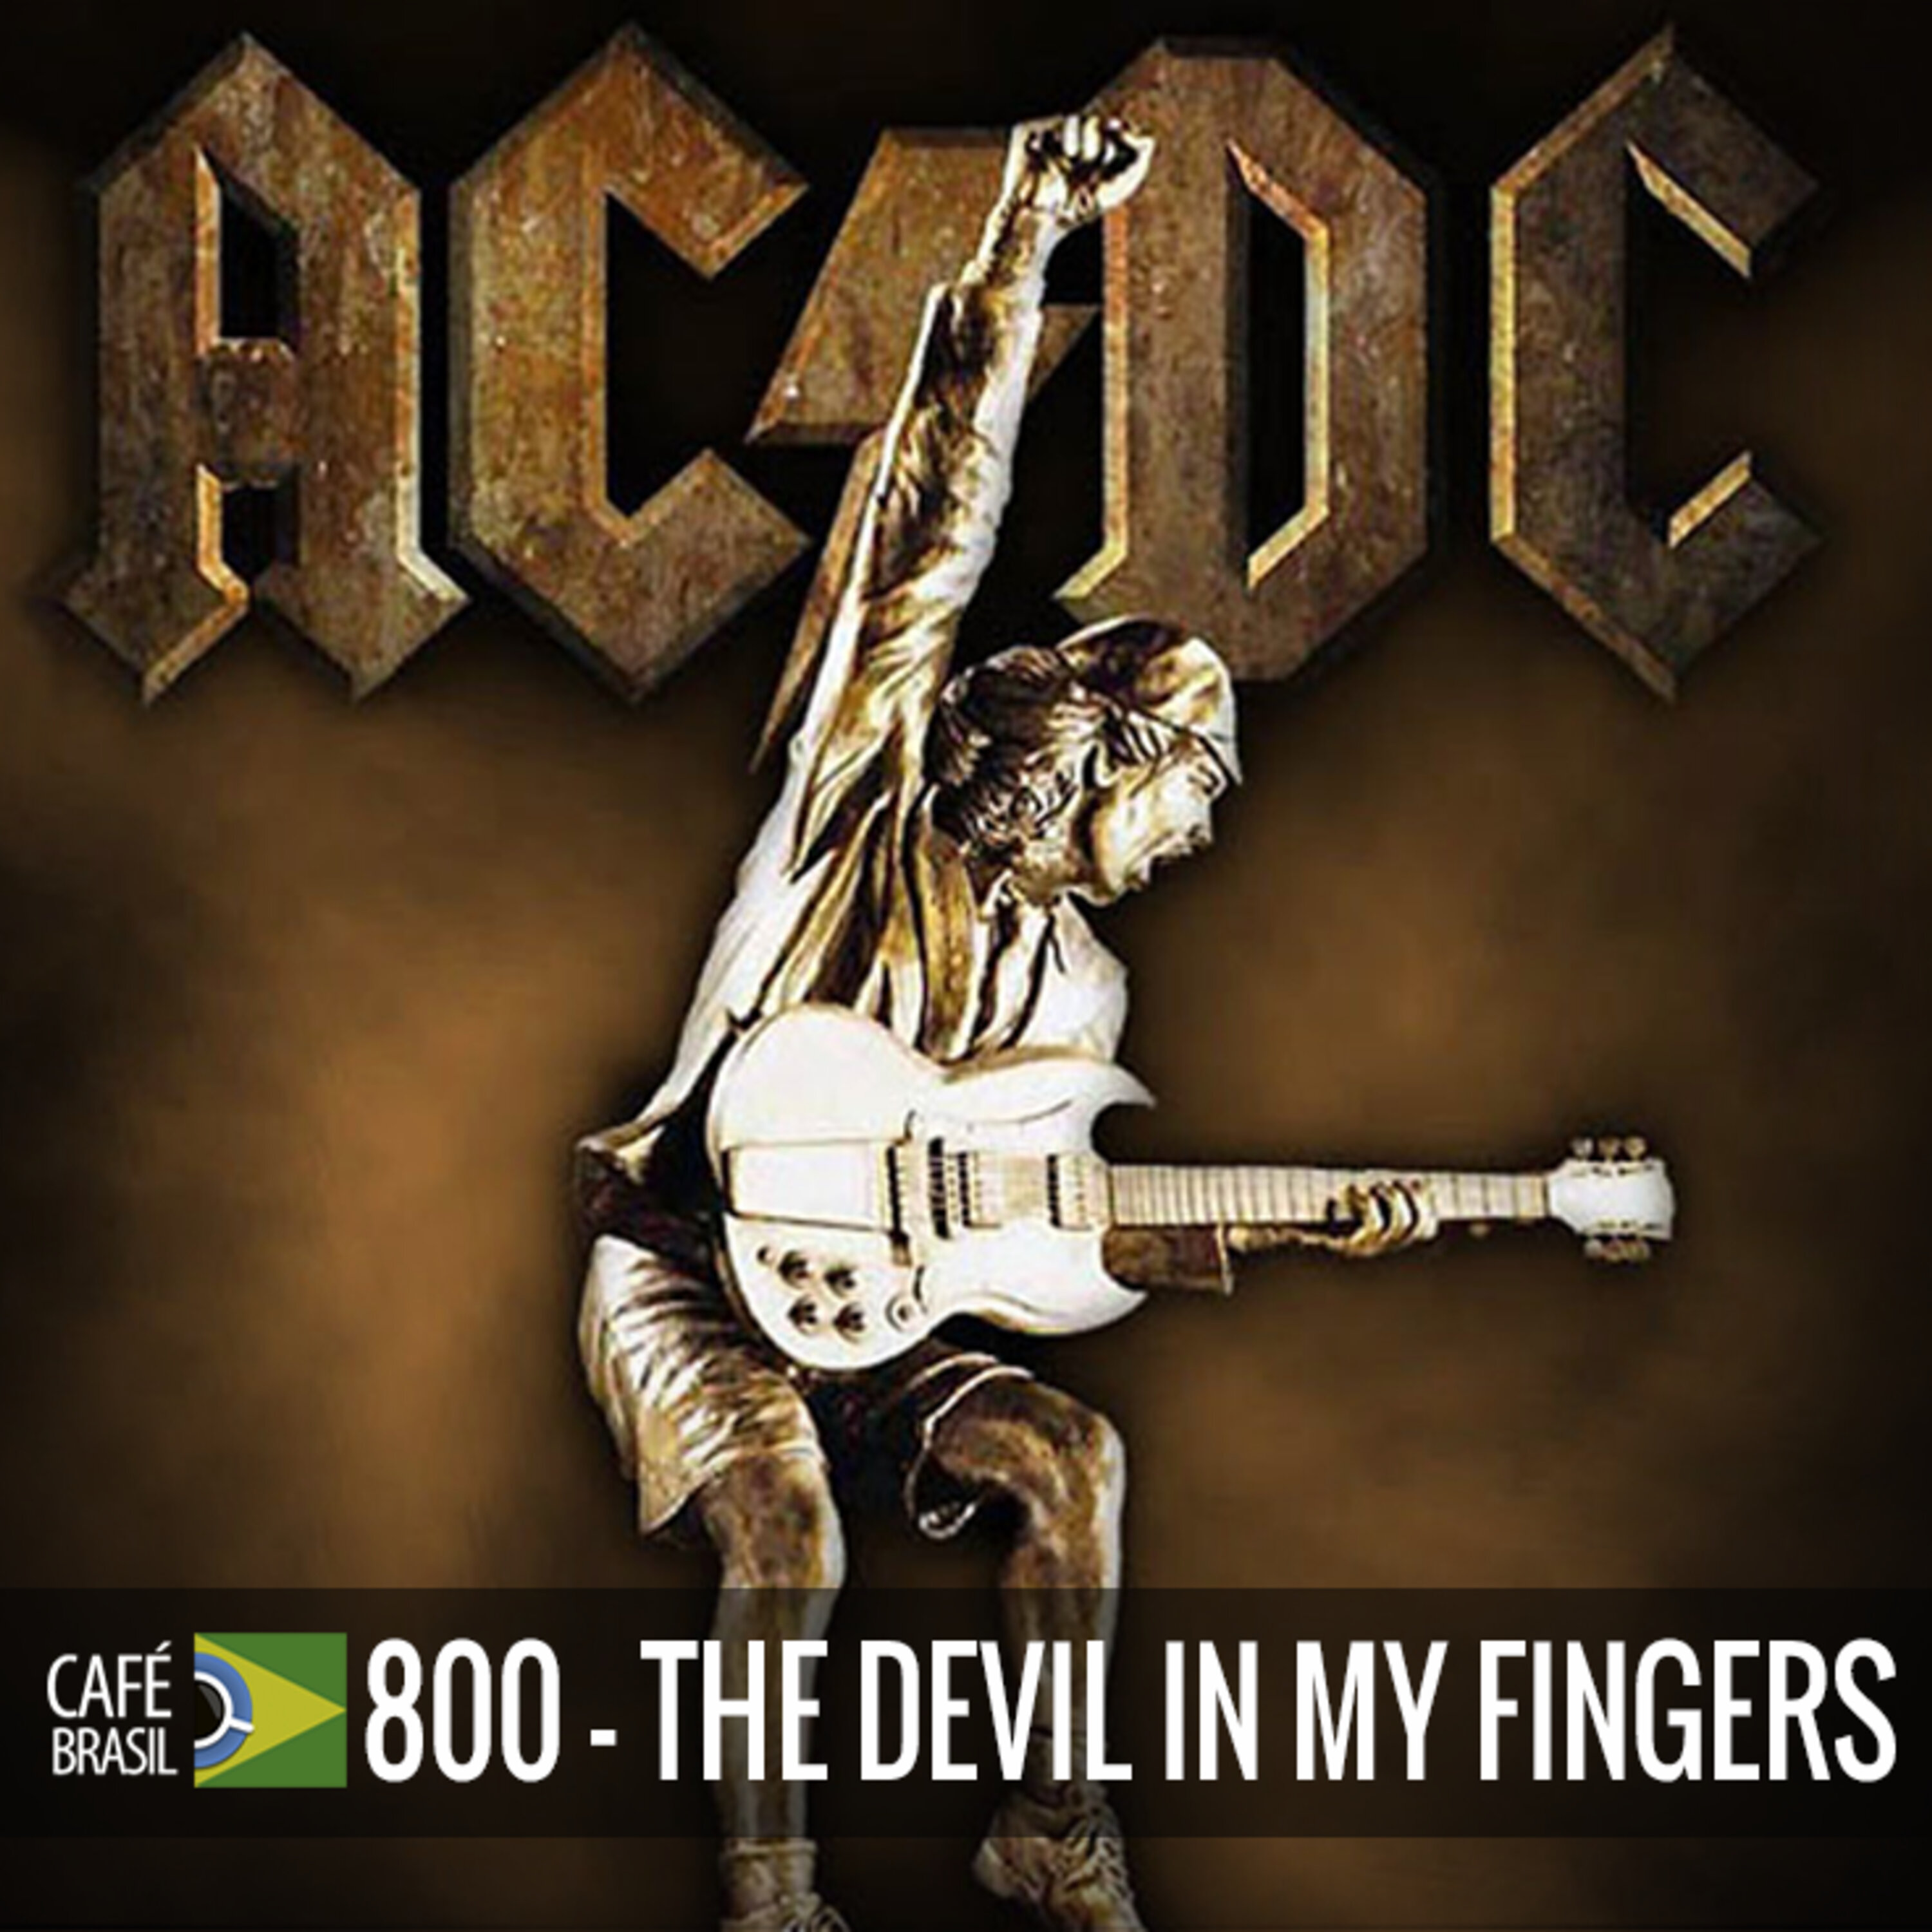 Cafe Brasil 800 - The devil in my fingers